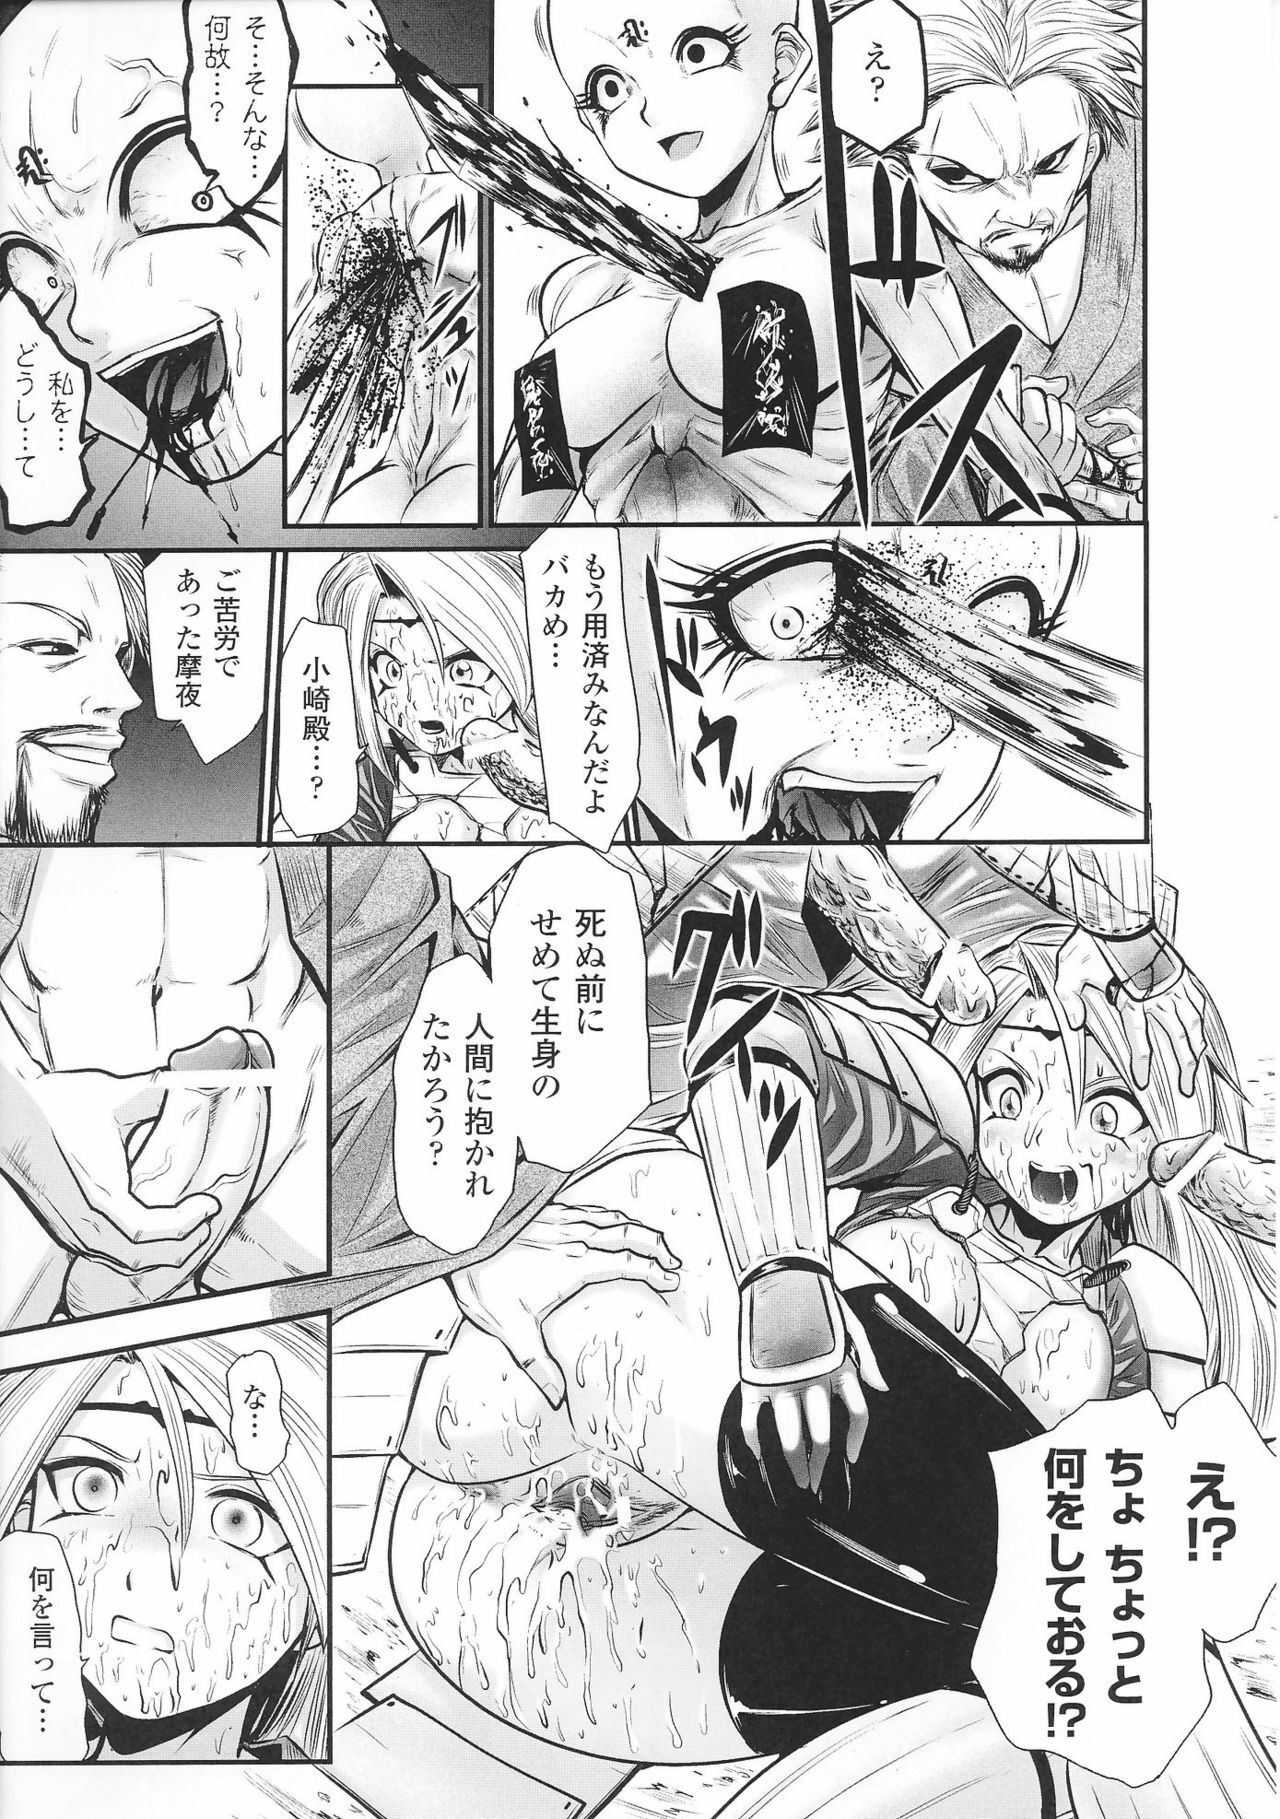 [Anthology] Hime Musha Anthology Comics | Princess Warrior Anthology Comics page 43 full